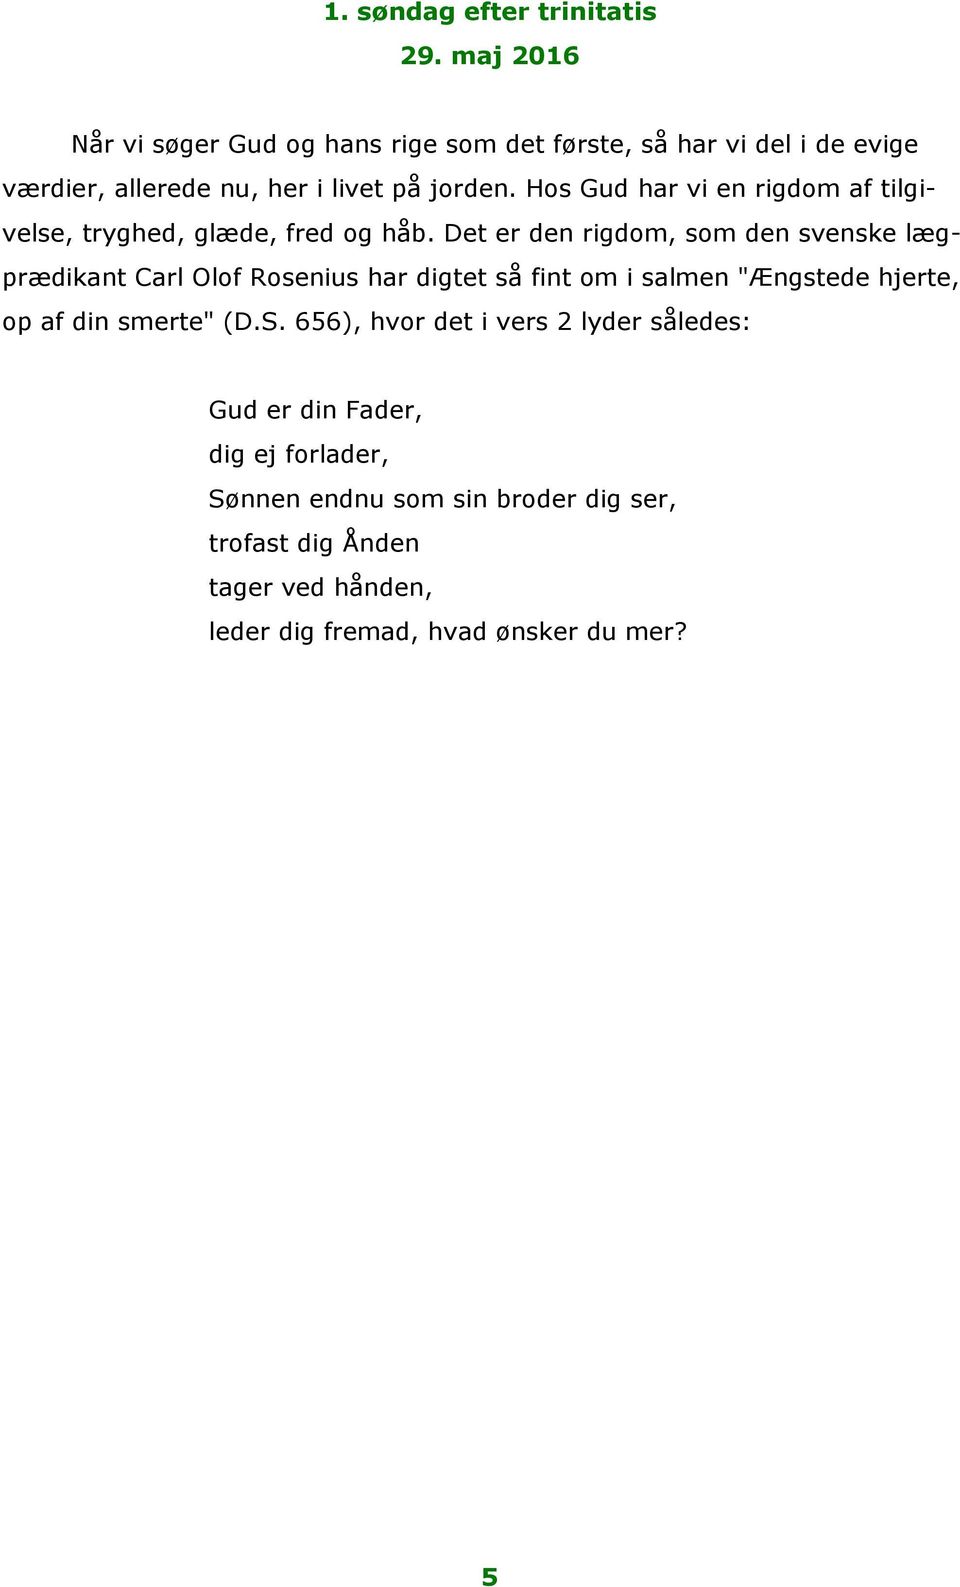 Det er den rigdom, som den svenske lægprædikant Carl Olof Rosenius har digtet så fint om i salmen "Ængstede hjerte, op af din